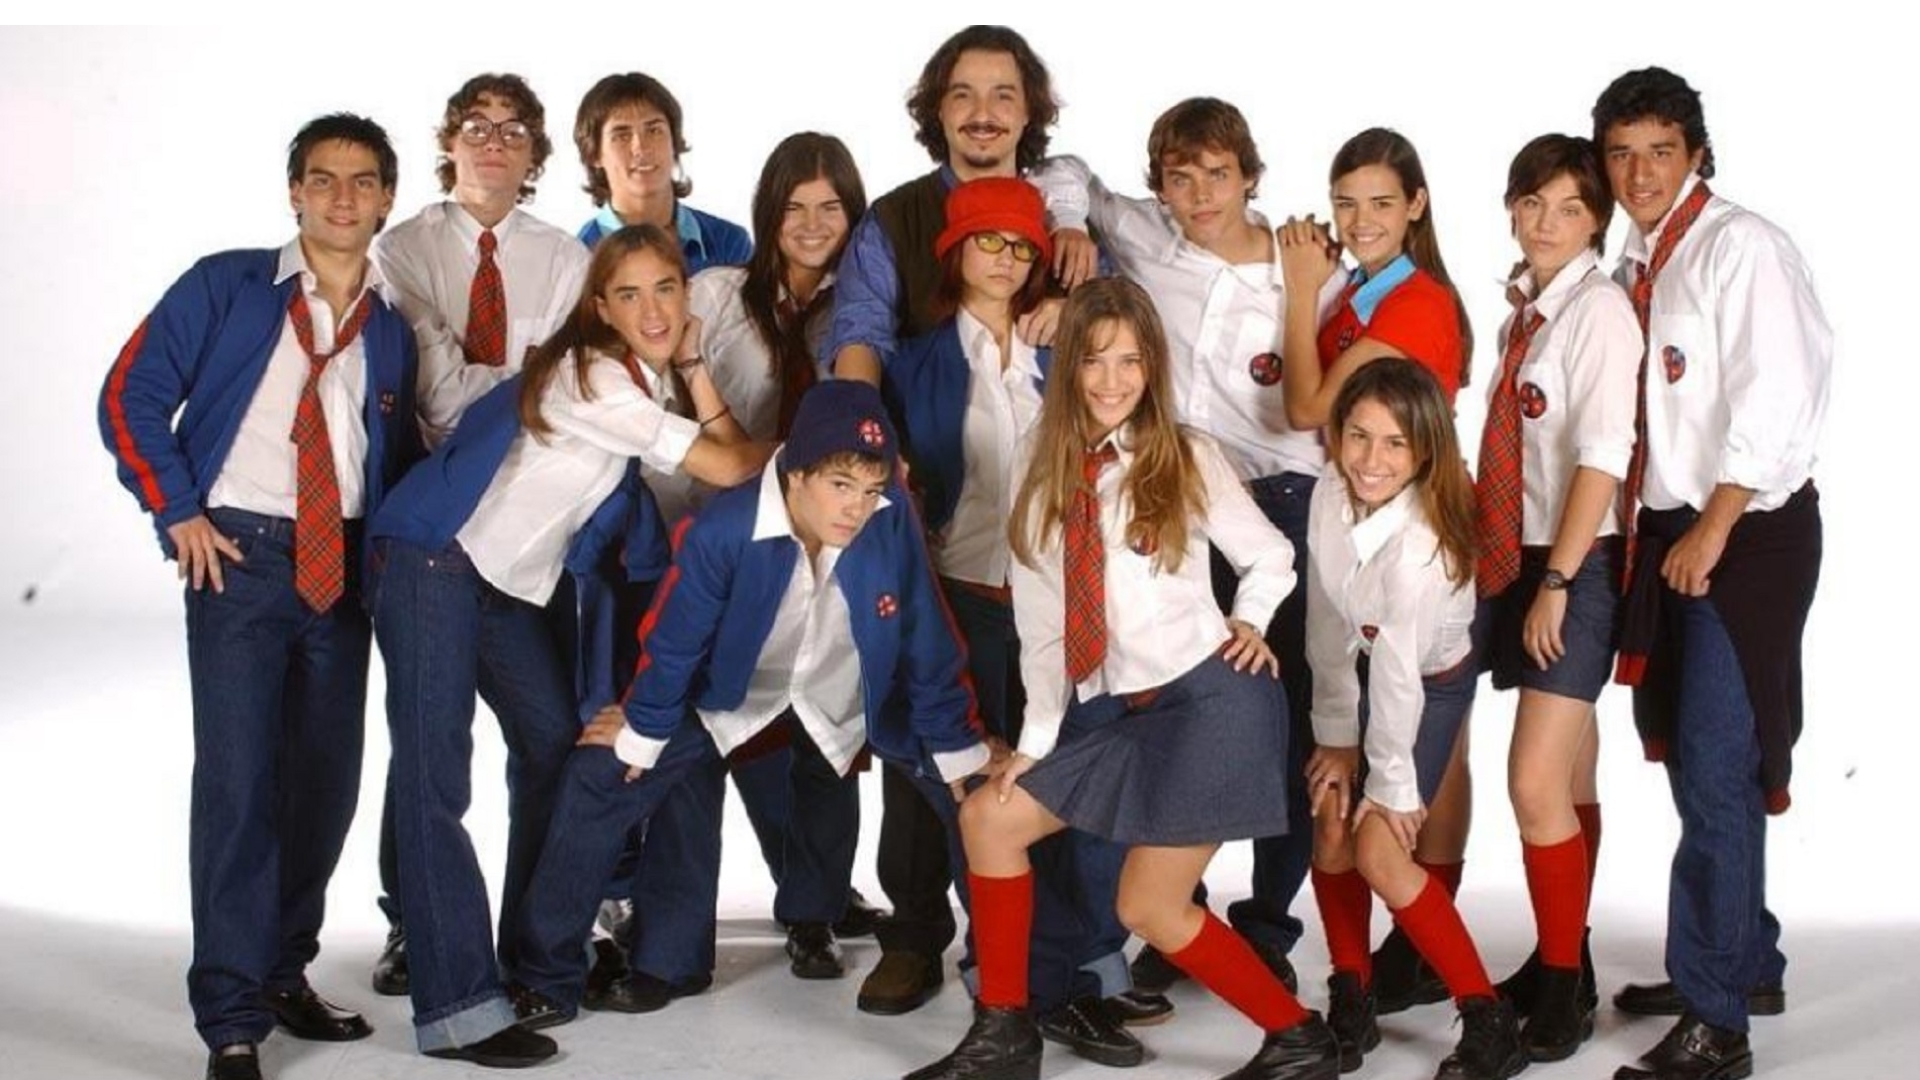 El elenco completo de la primera temporada de Rebelde Way, que se emitió en 2002